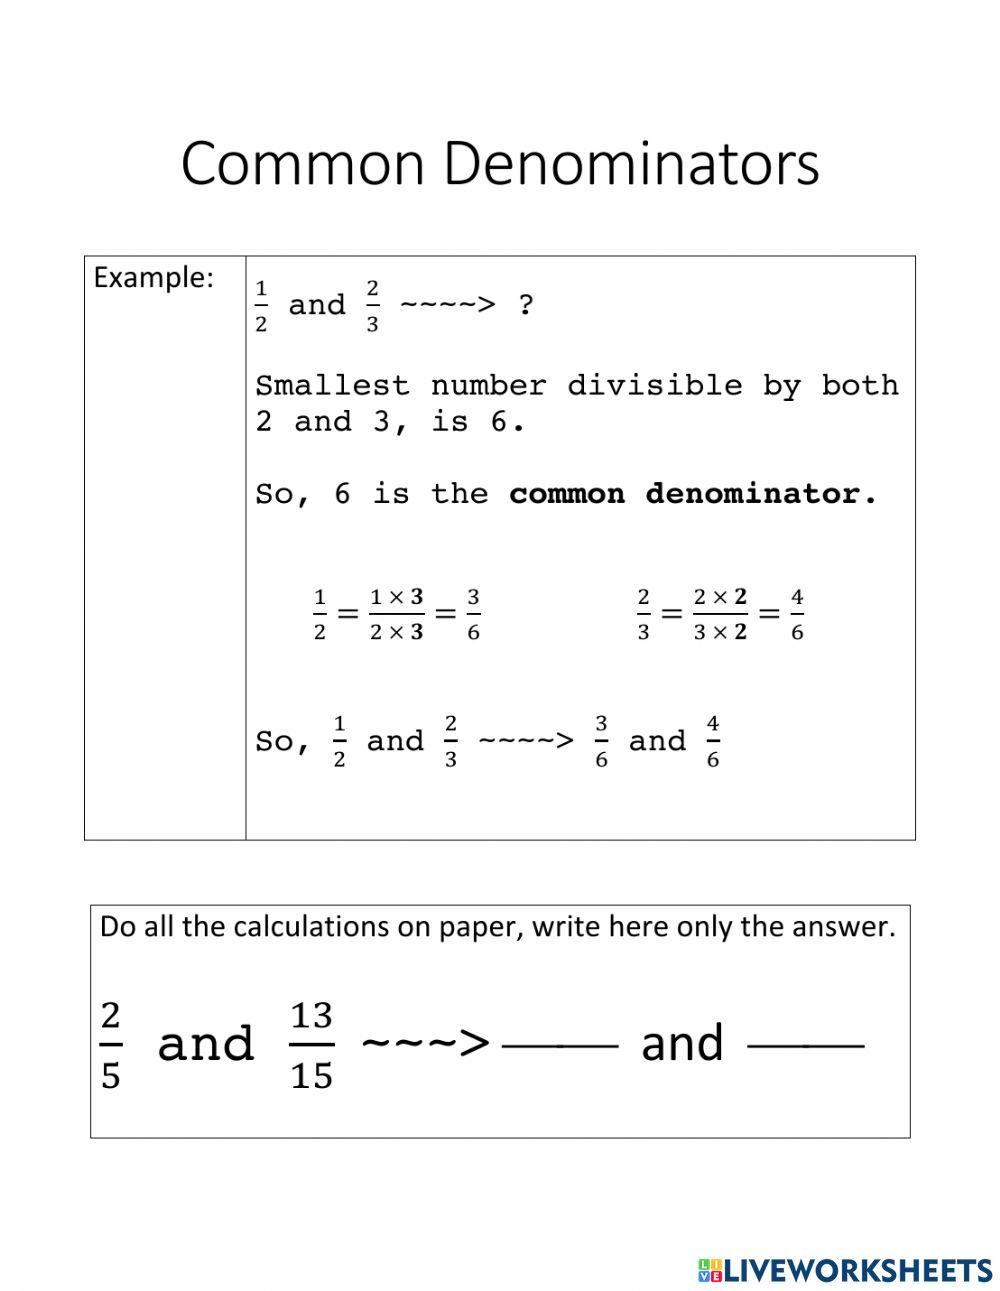 Common Denominators - 1